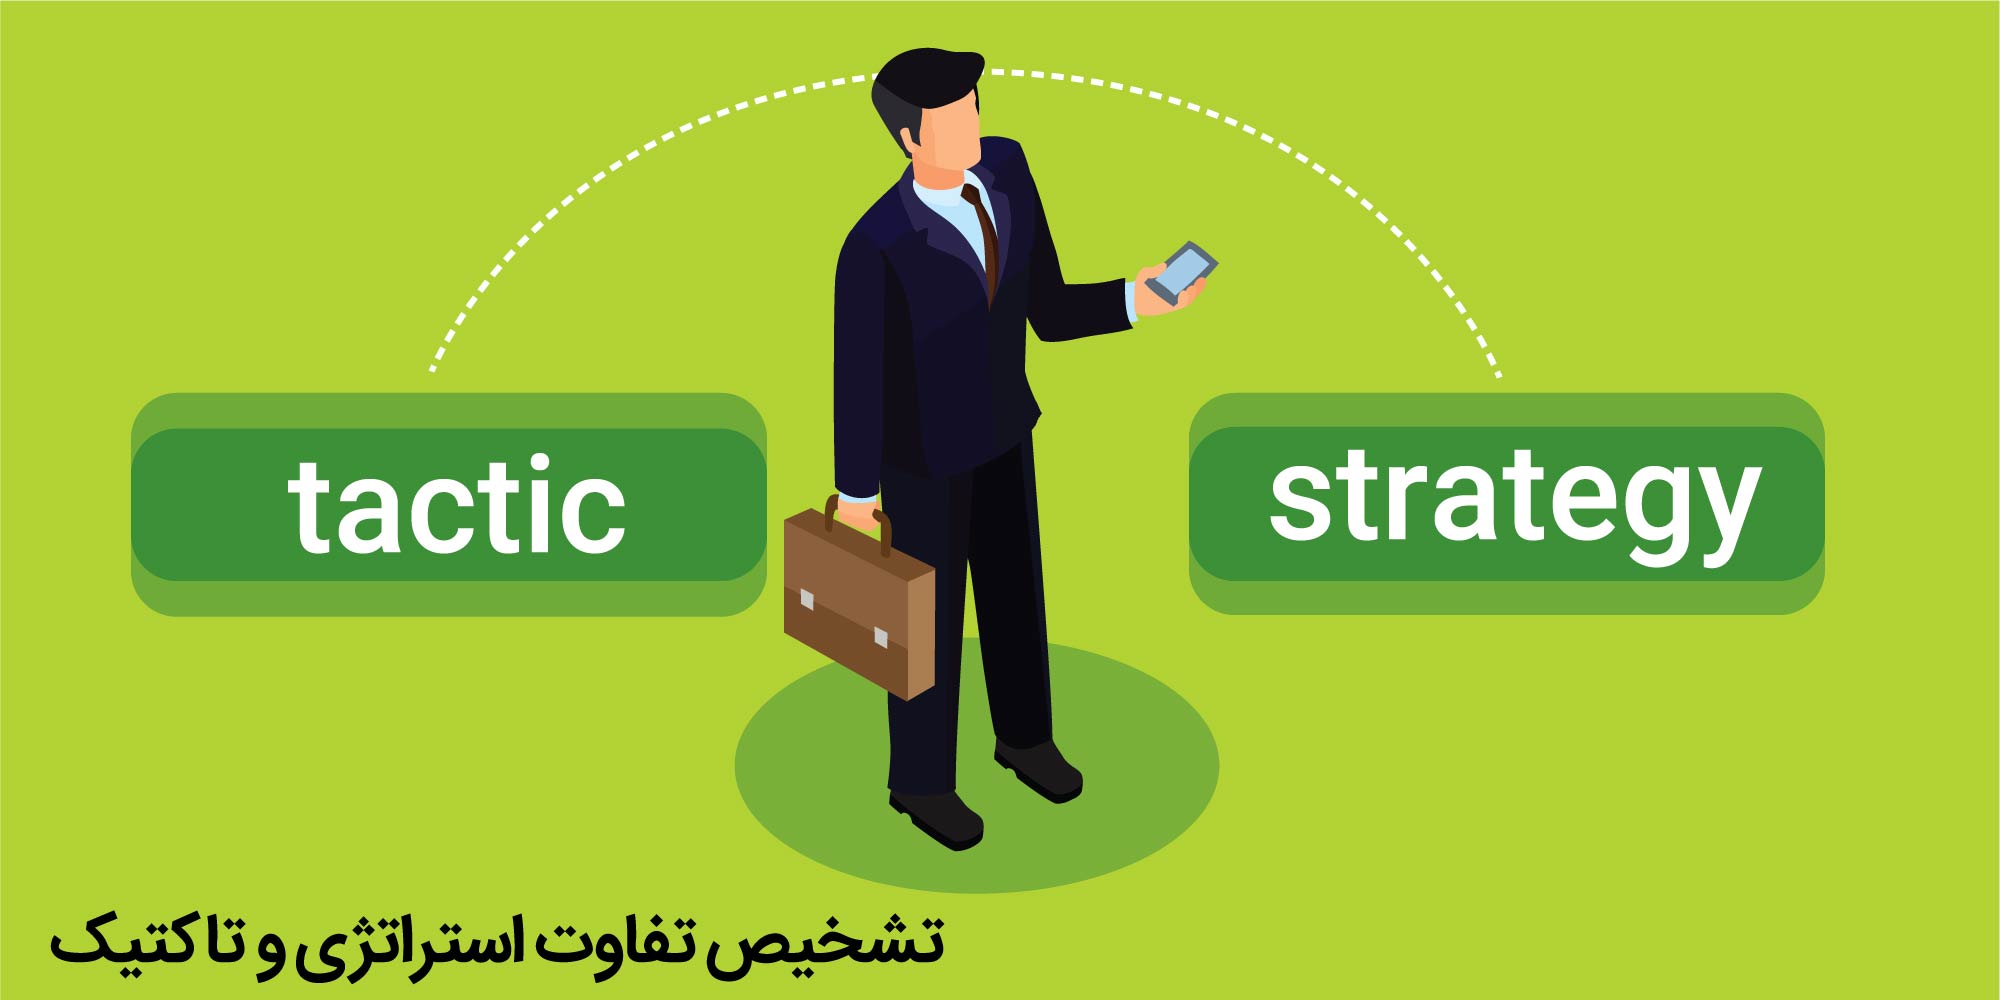 تمایز بین استراتژی و تاکتیک